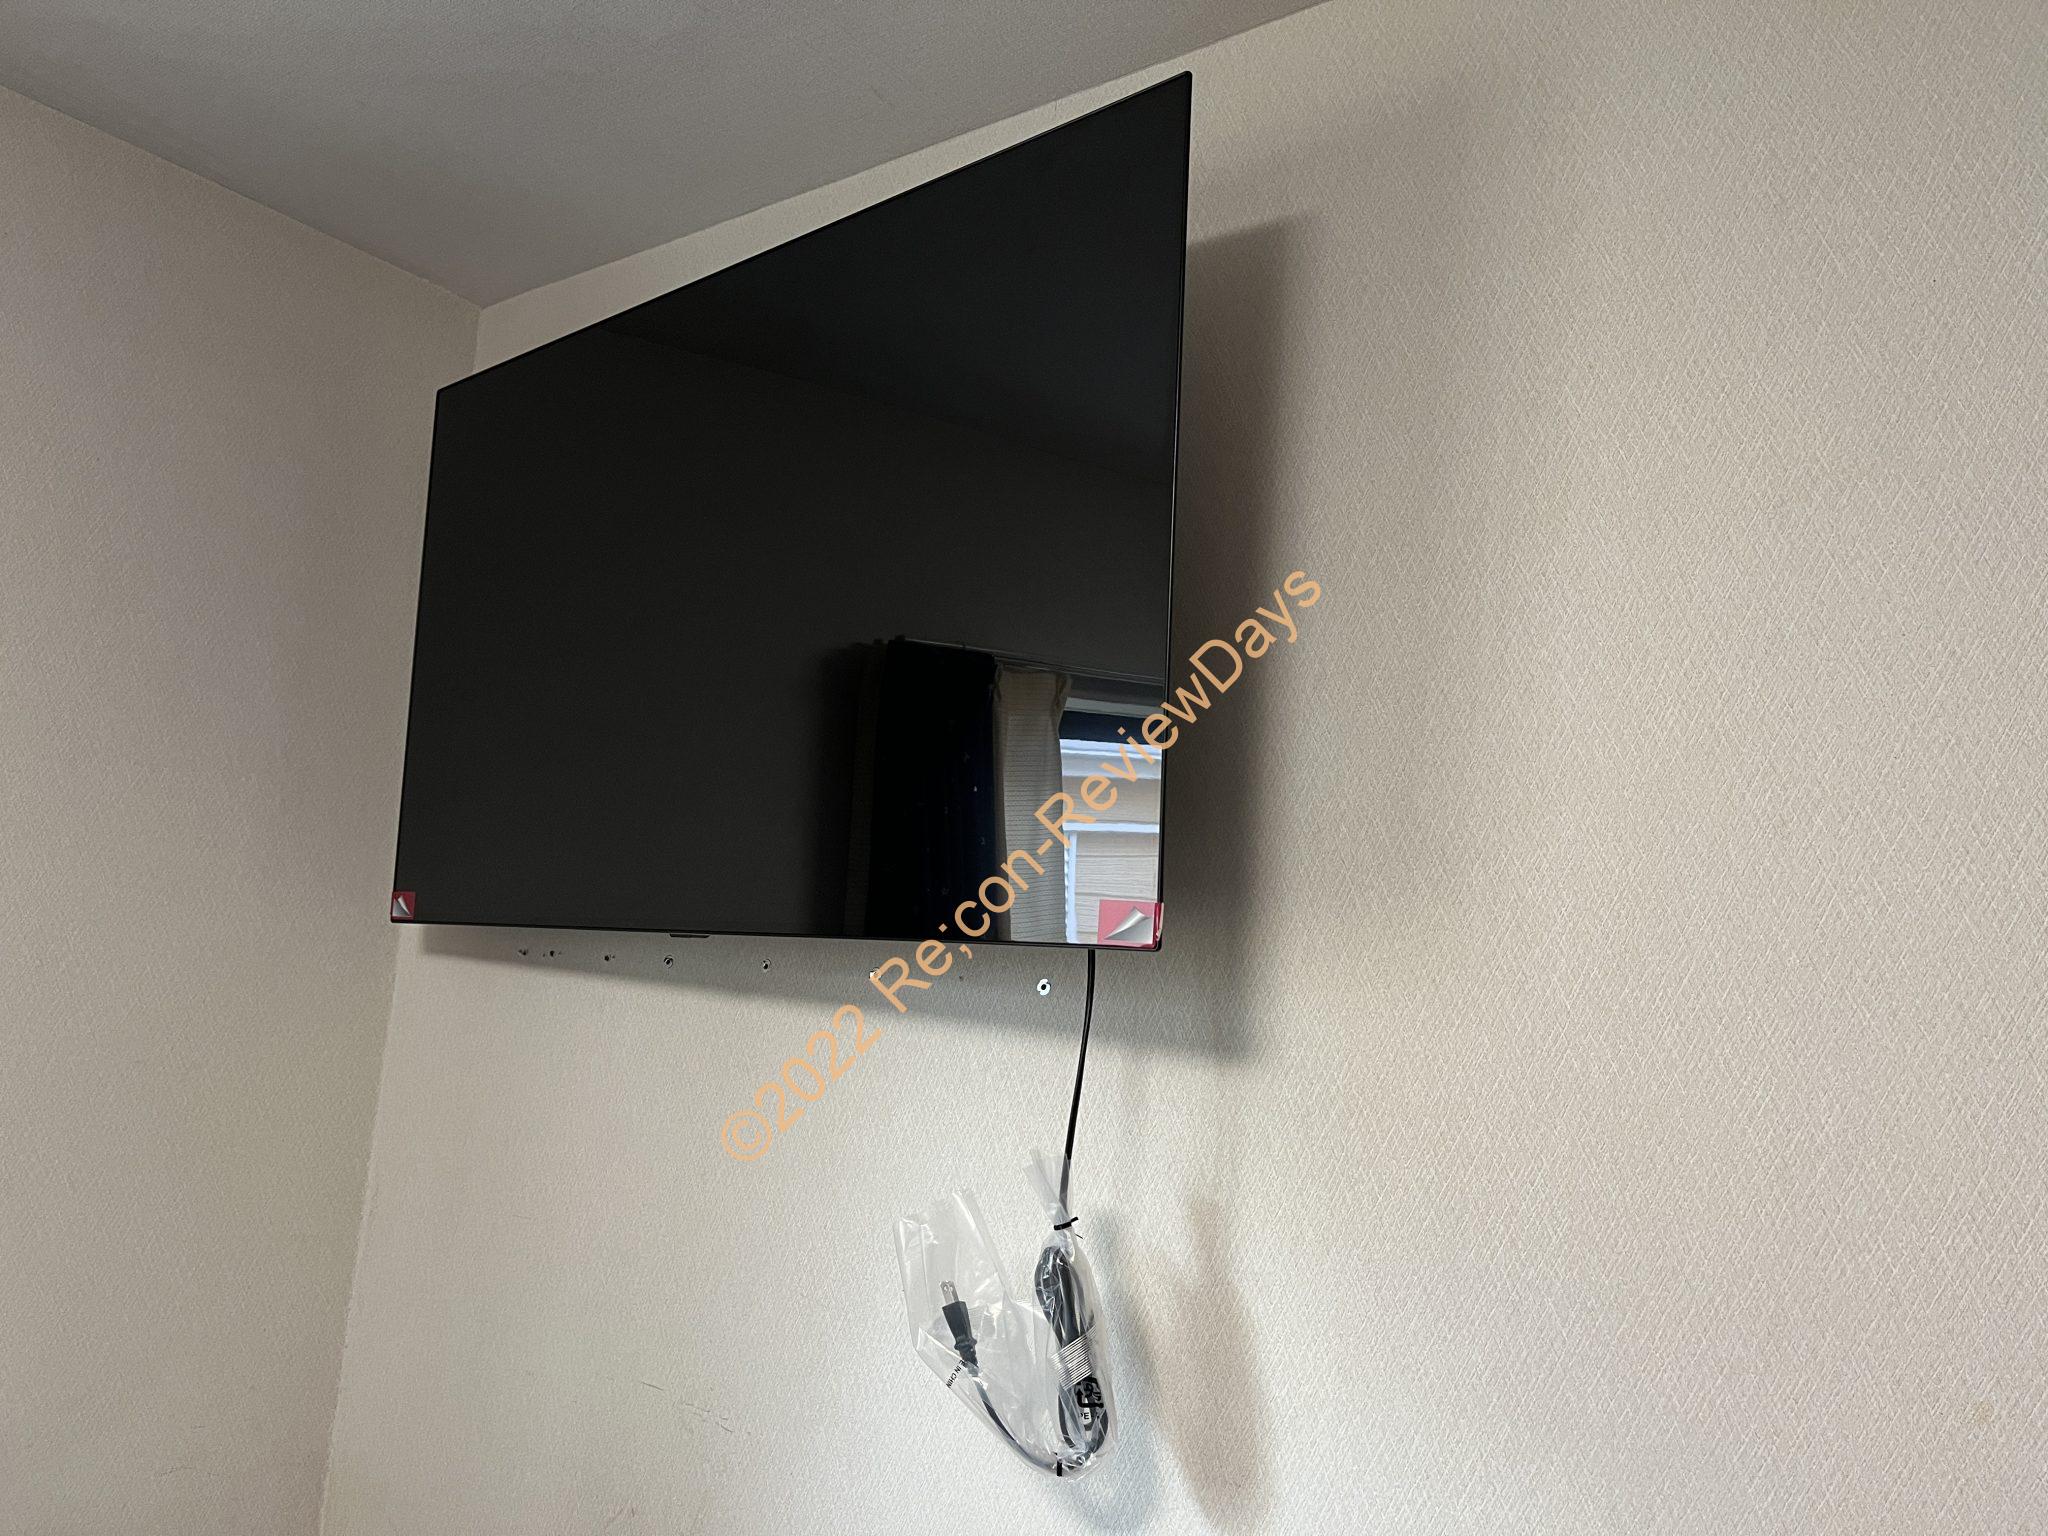 LG製の48インチ有機ELテレビ「OLED48C1PJB」の壁掛け用金具「PL2432-07」を購入、取り付けしてみました #LG #OLED48C1PJB #壁掛け #Amazon